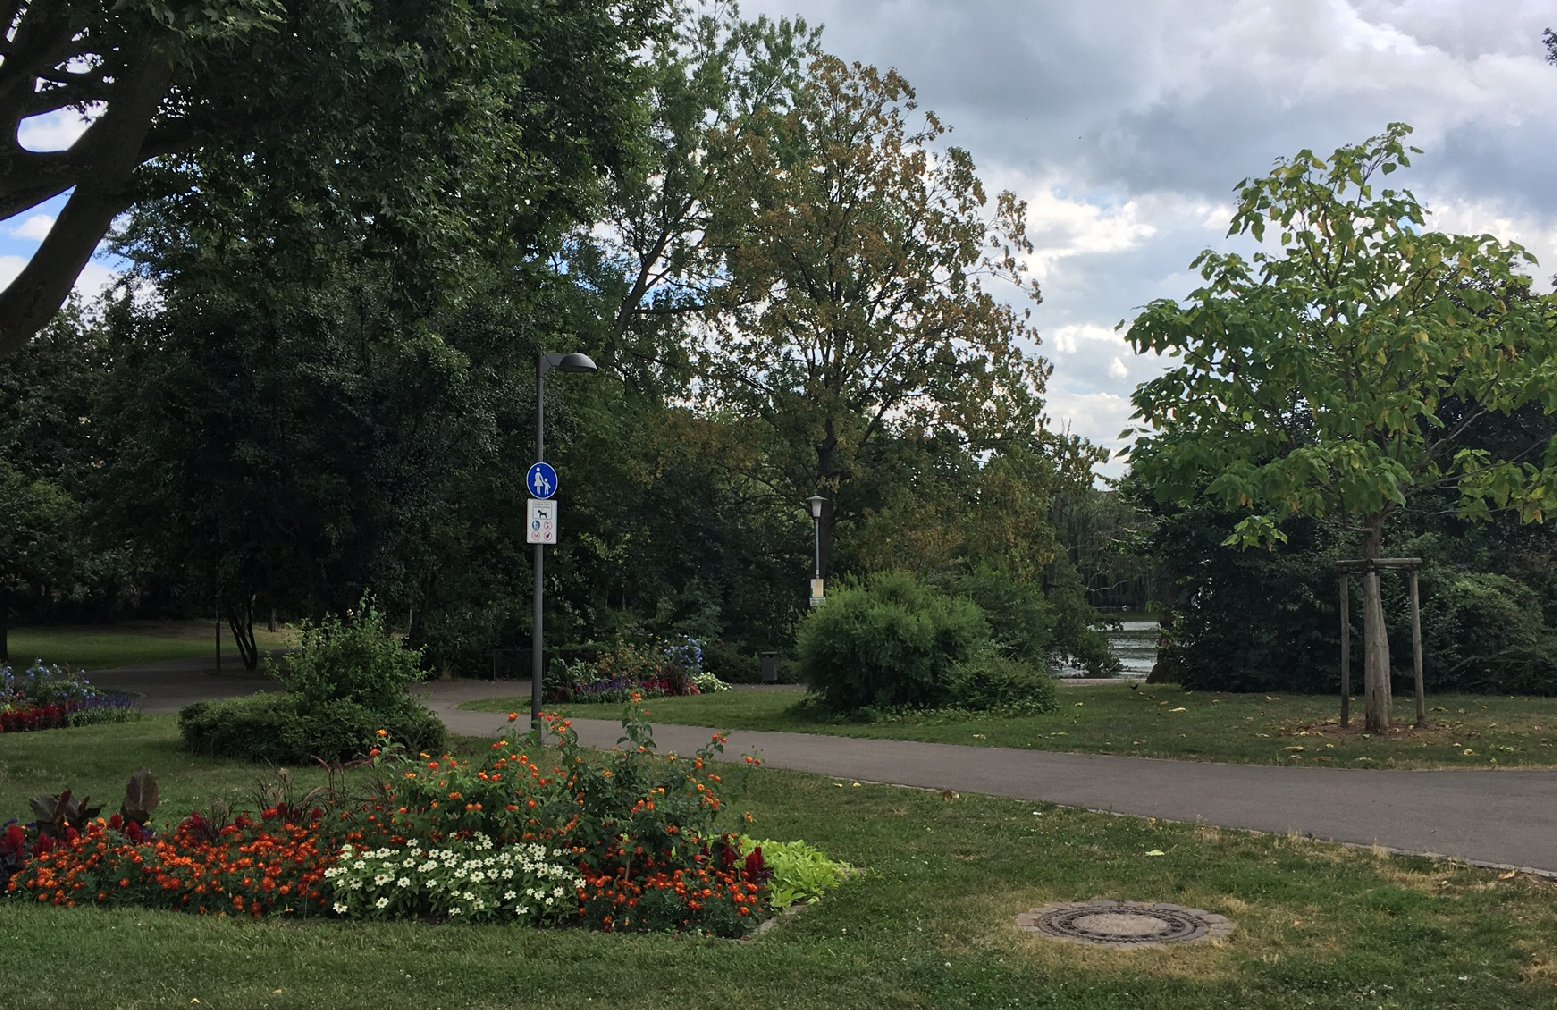 Oberbürgermeister Hirsch kündigte an, prüfen zu lassen, ob im Ostpark eine Kamera-Überwachung sinnvoll und zulässig sein könnte. Foto: stadt-landau